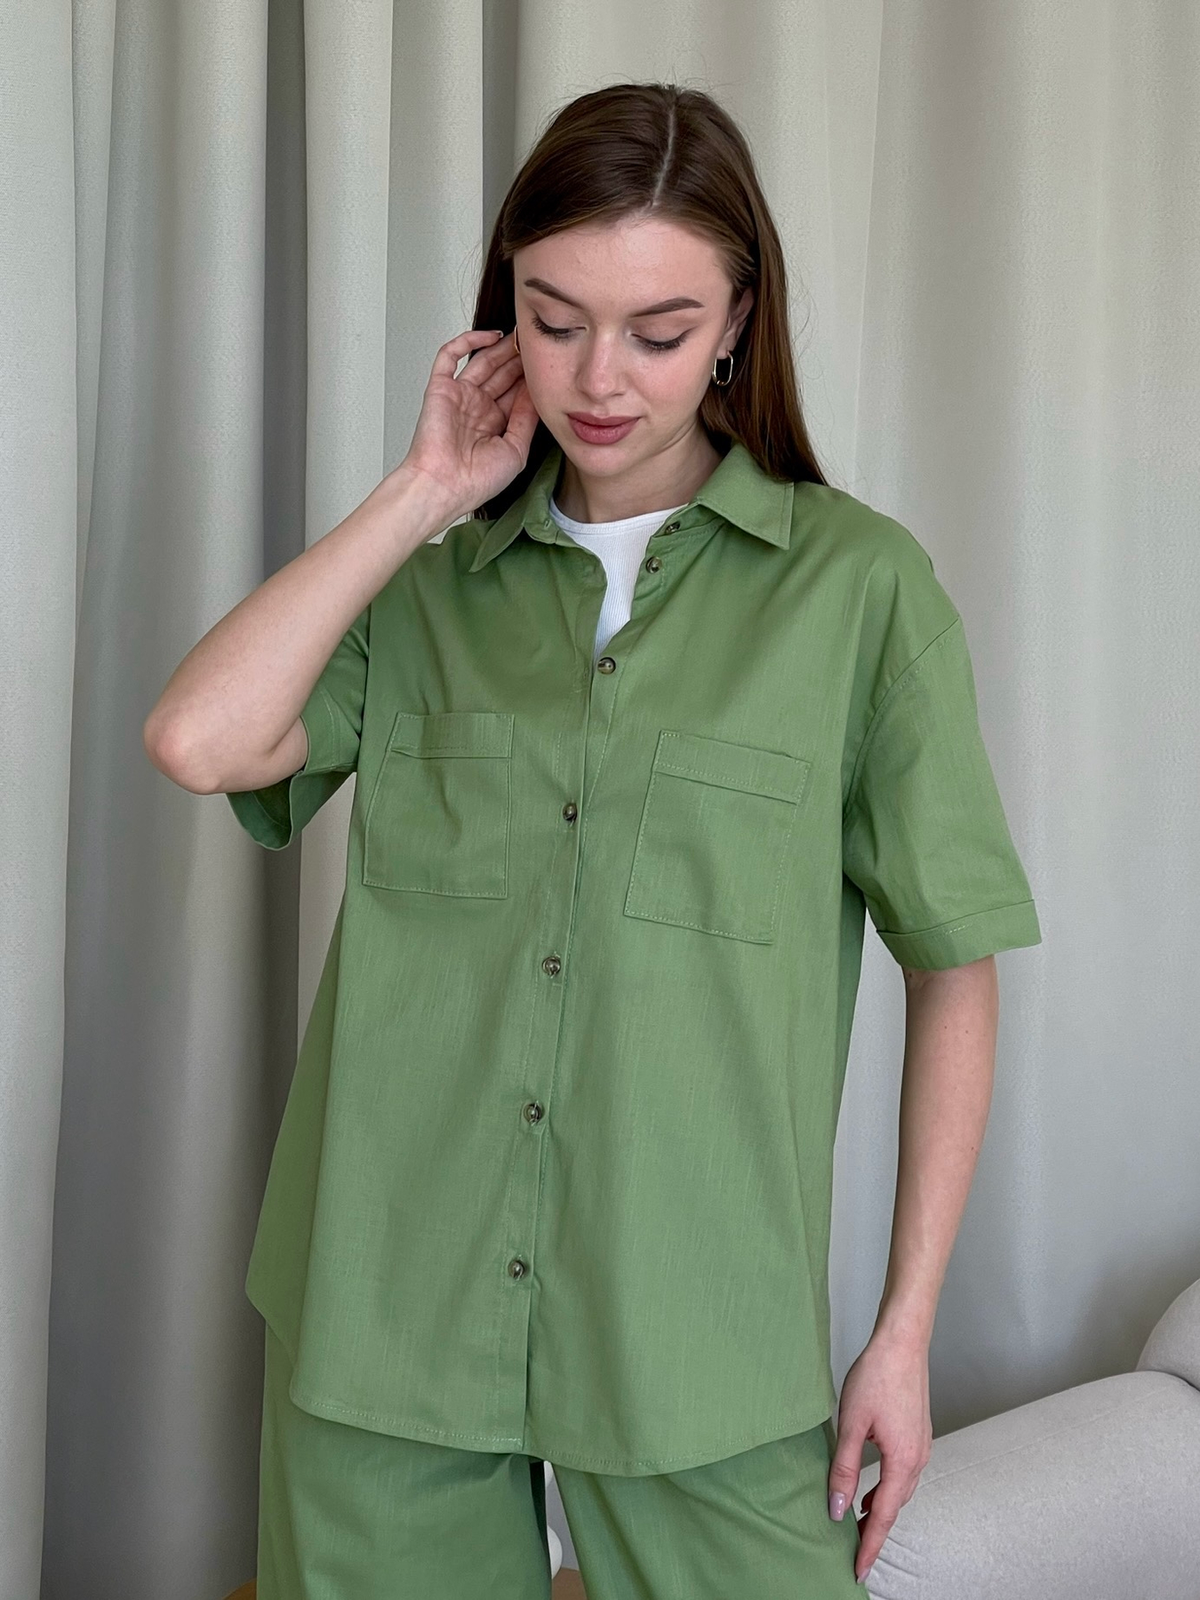 Купить Льняной костюм с штанами палаццо и рубашкой зеленый Лорен 100001205 размер 42-44 (S-M) в интернет-магазине